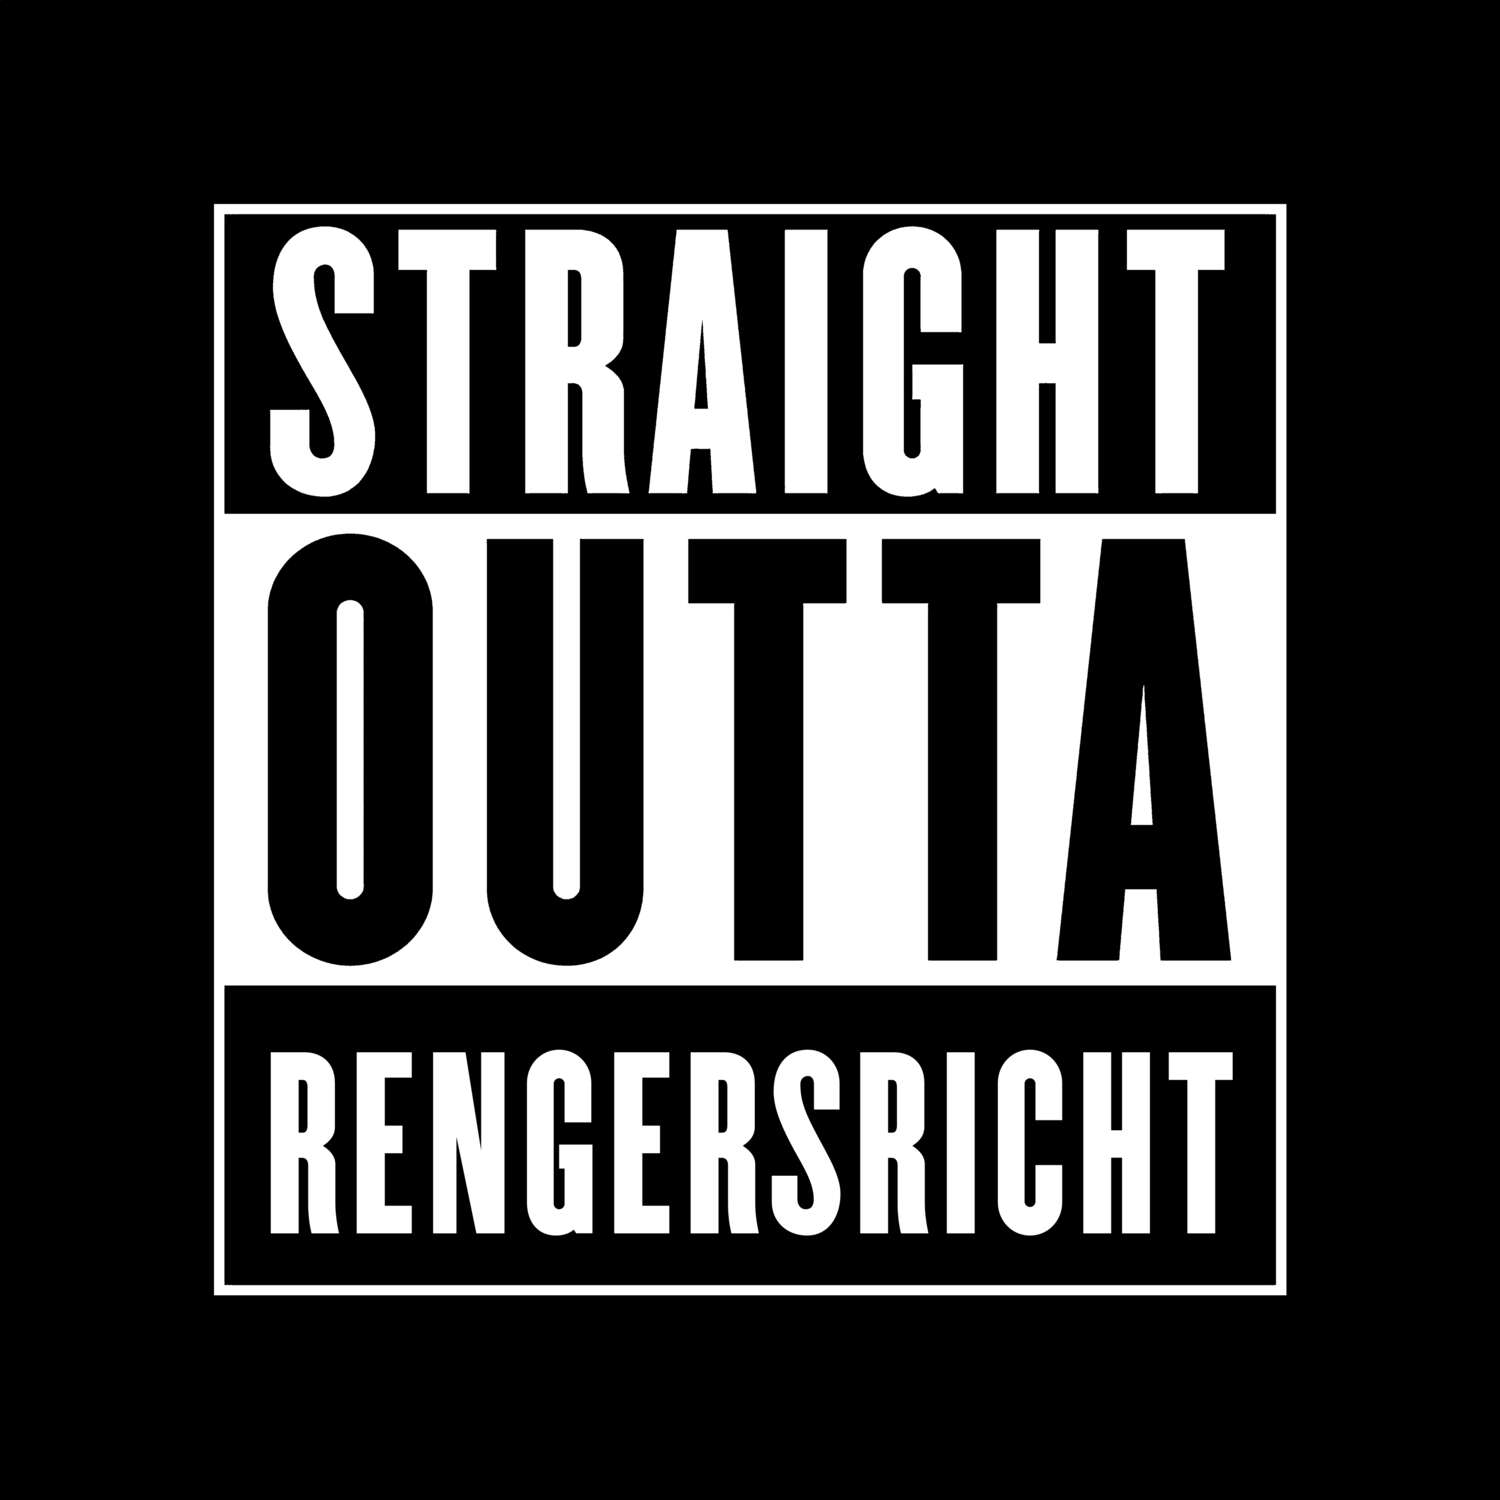 Rengersricht T-Shirt »Straight Outta«